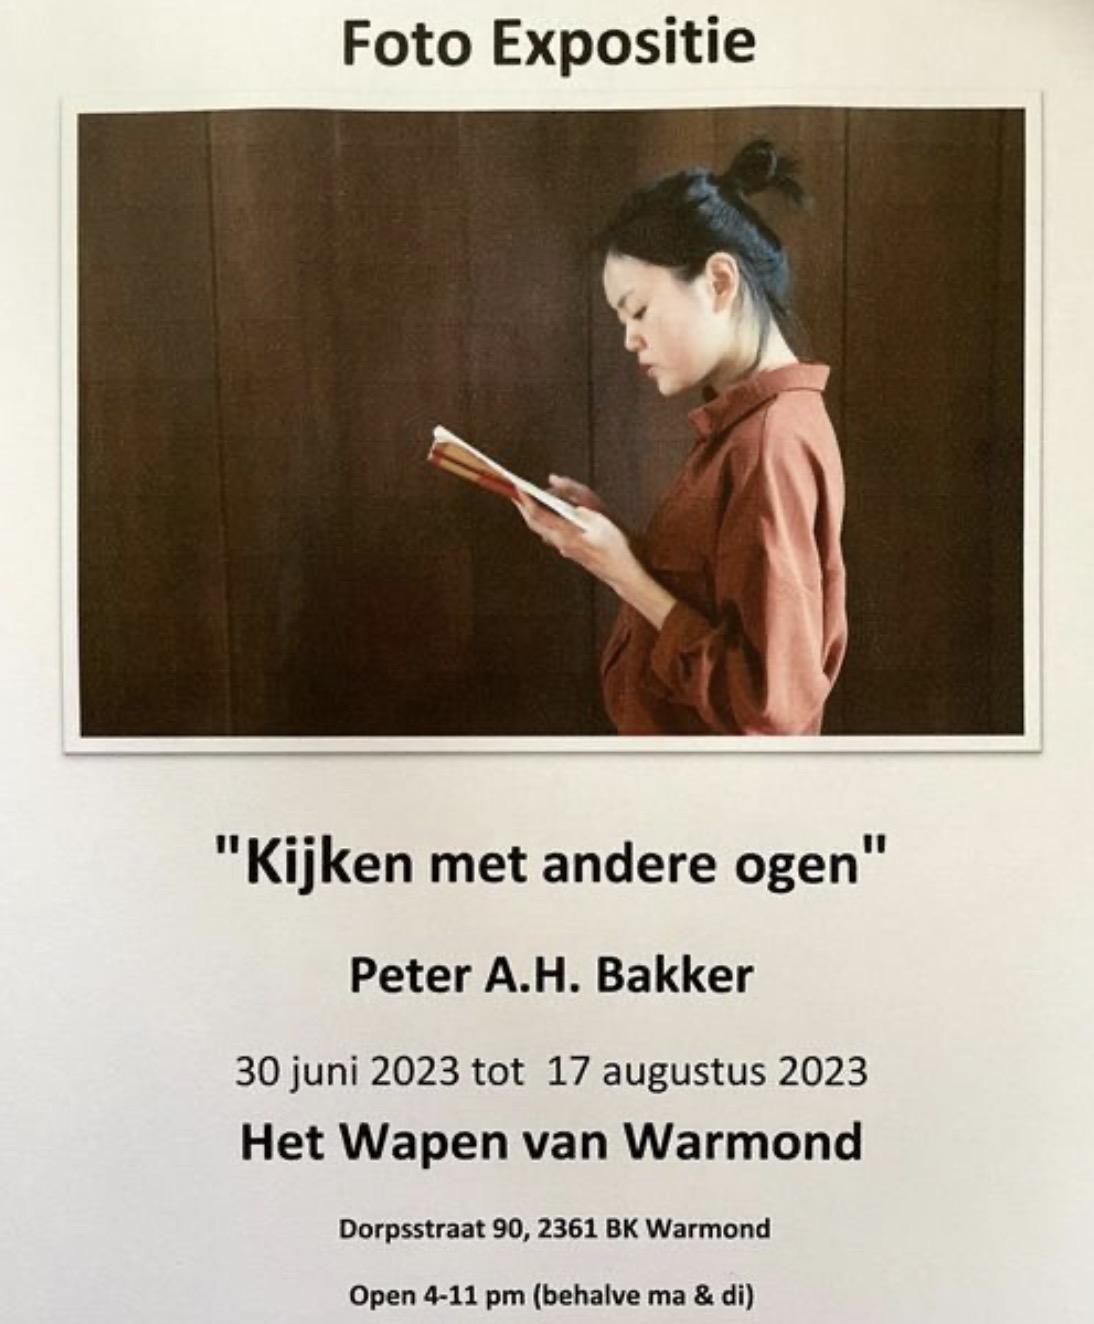 Foto expositie Peter A.H. Bakker tot 17/8